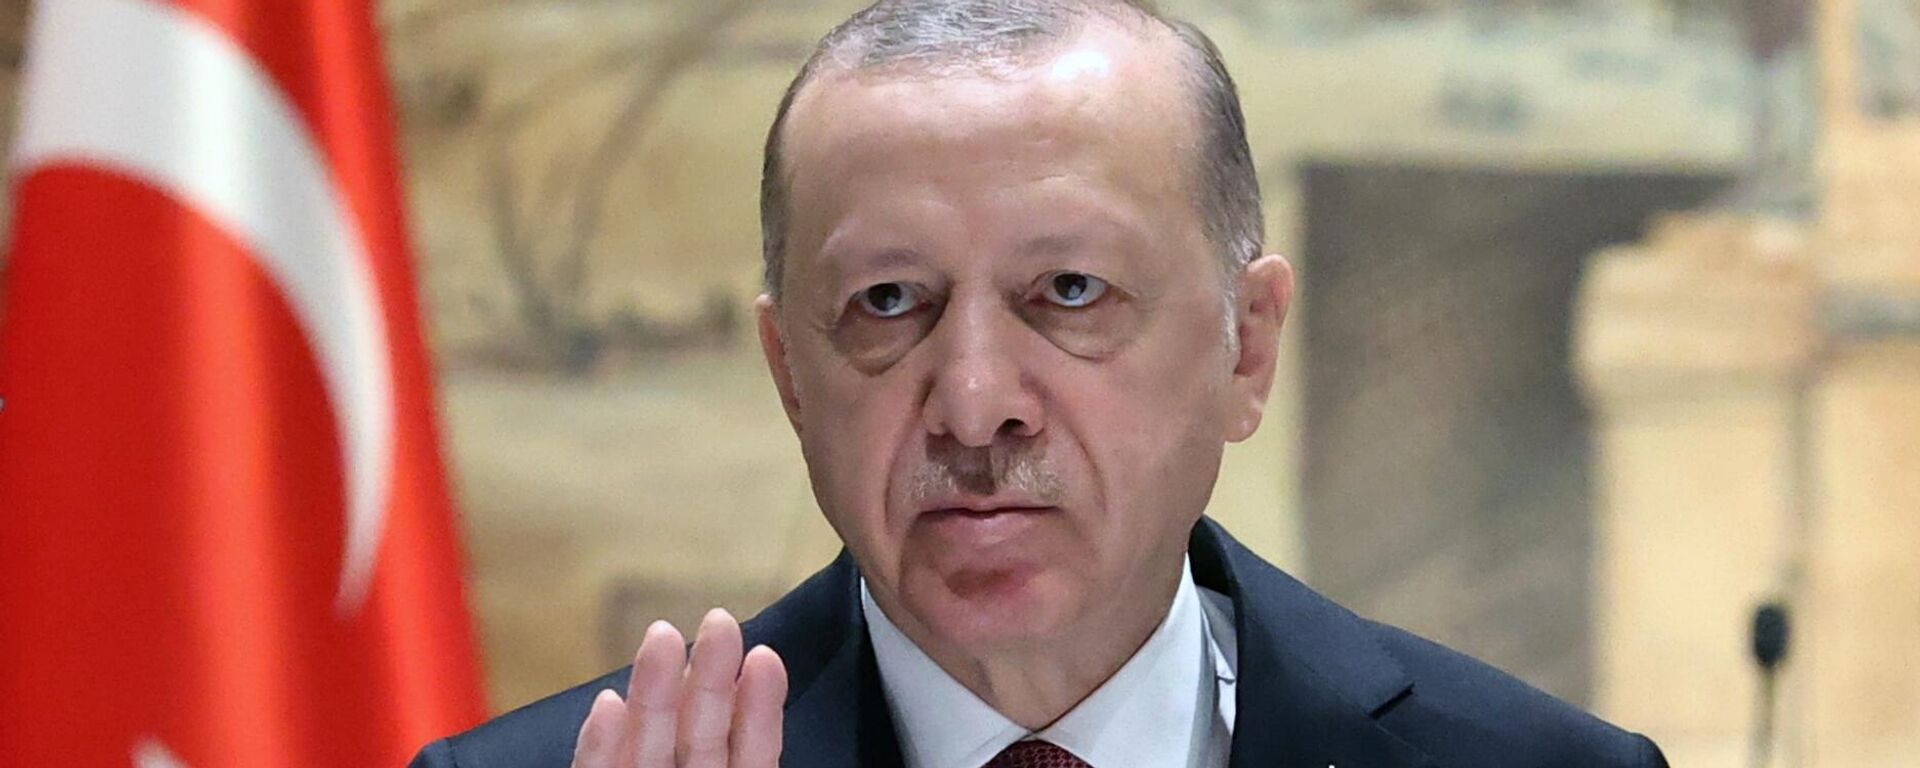 O presidente da Turquia, Recep Tayyip Erdogan, gesticula durante negociações entre Rússia e Ucrânia, em Istambul, 29 de março de 2022 - Sputnik Brasil, 1920, 03.09.2022